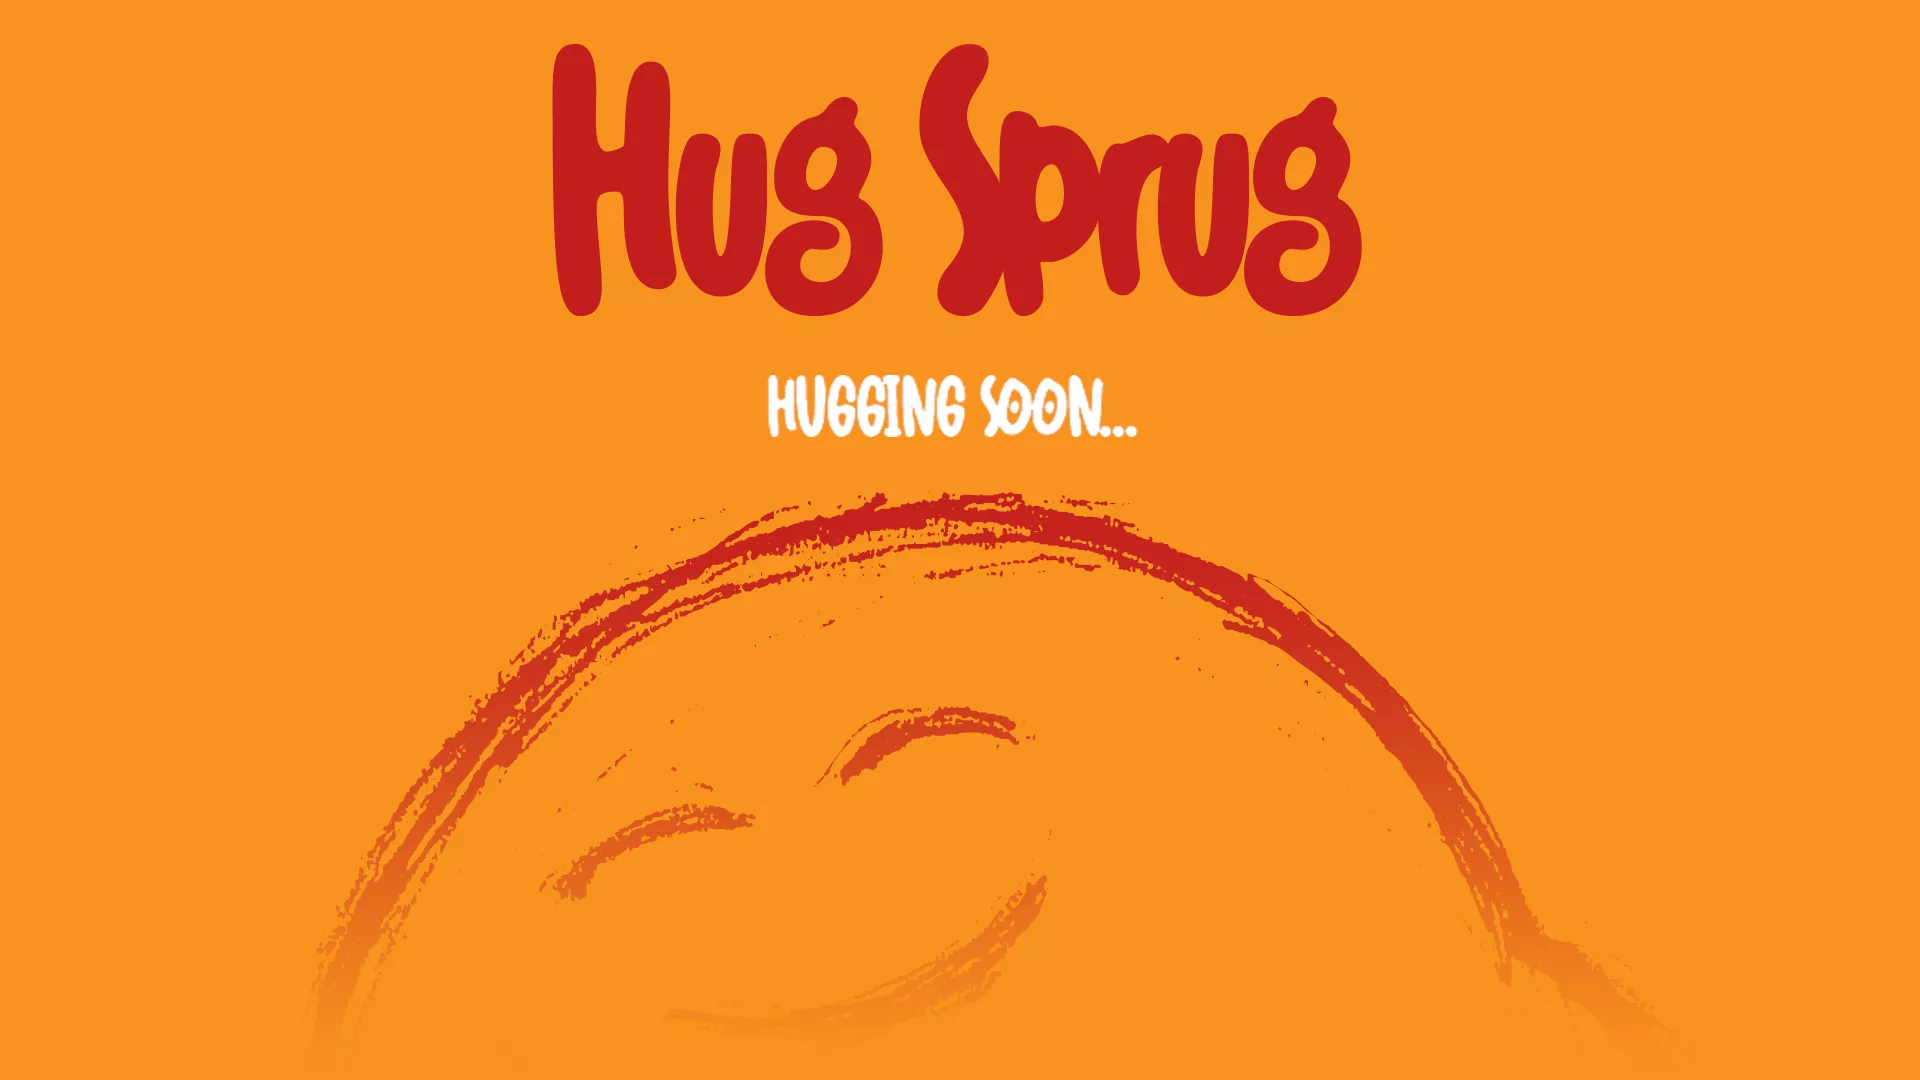 Hug Sprug